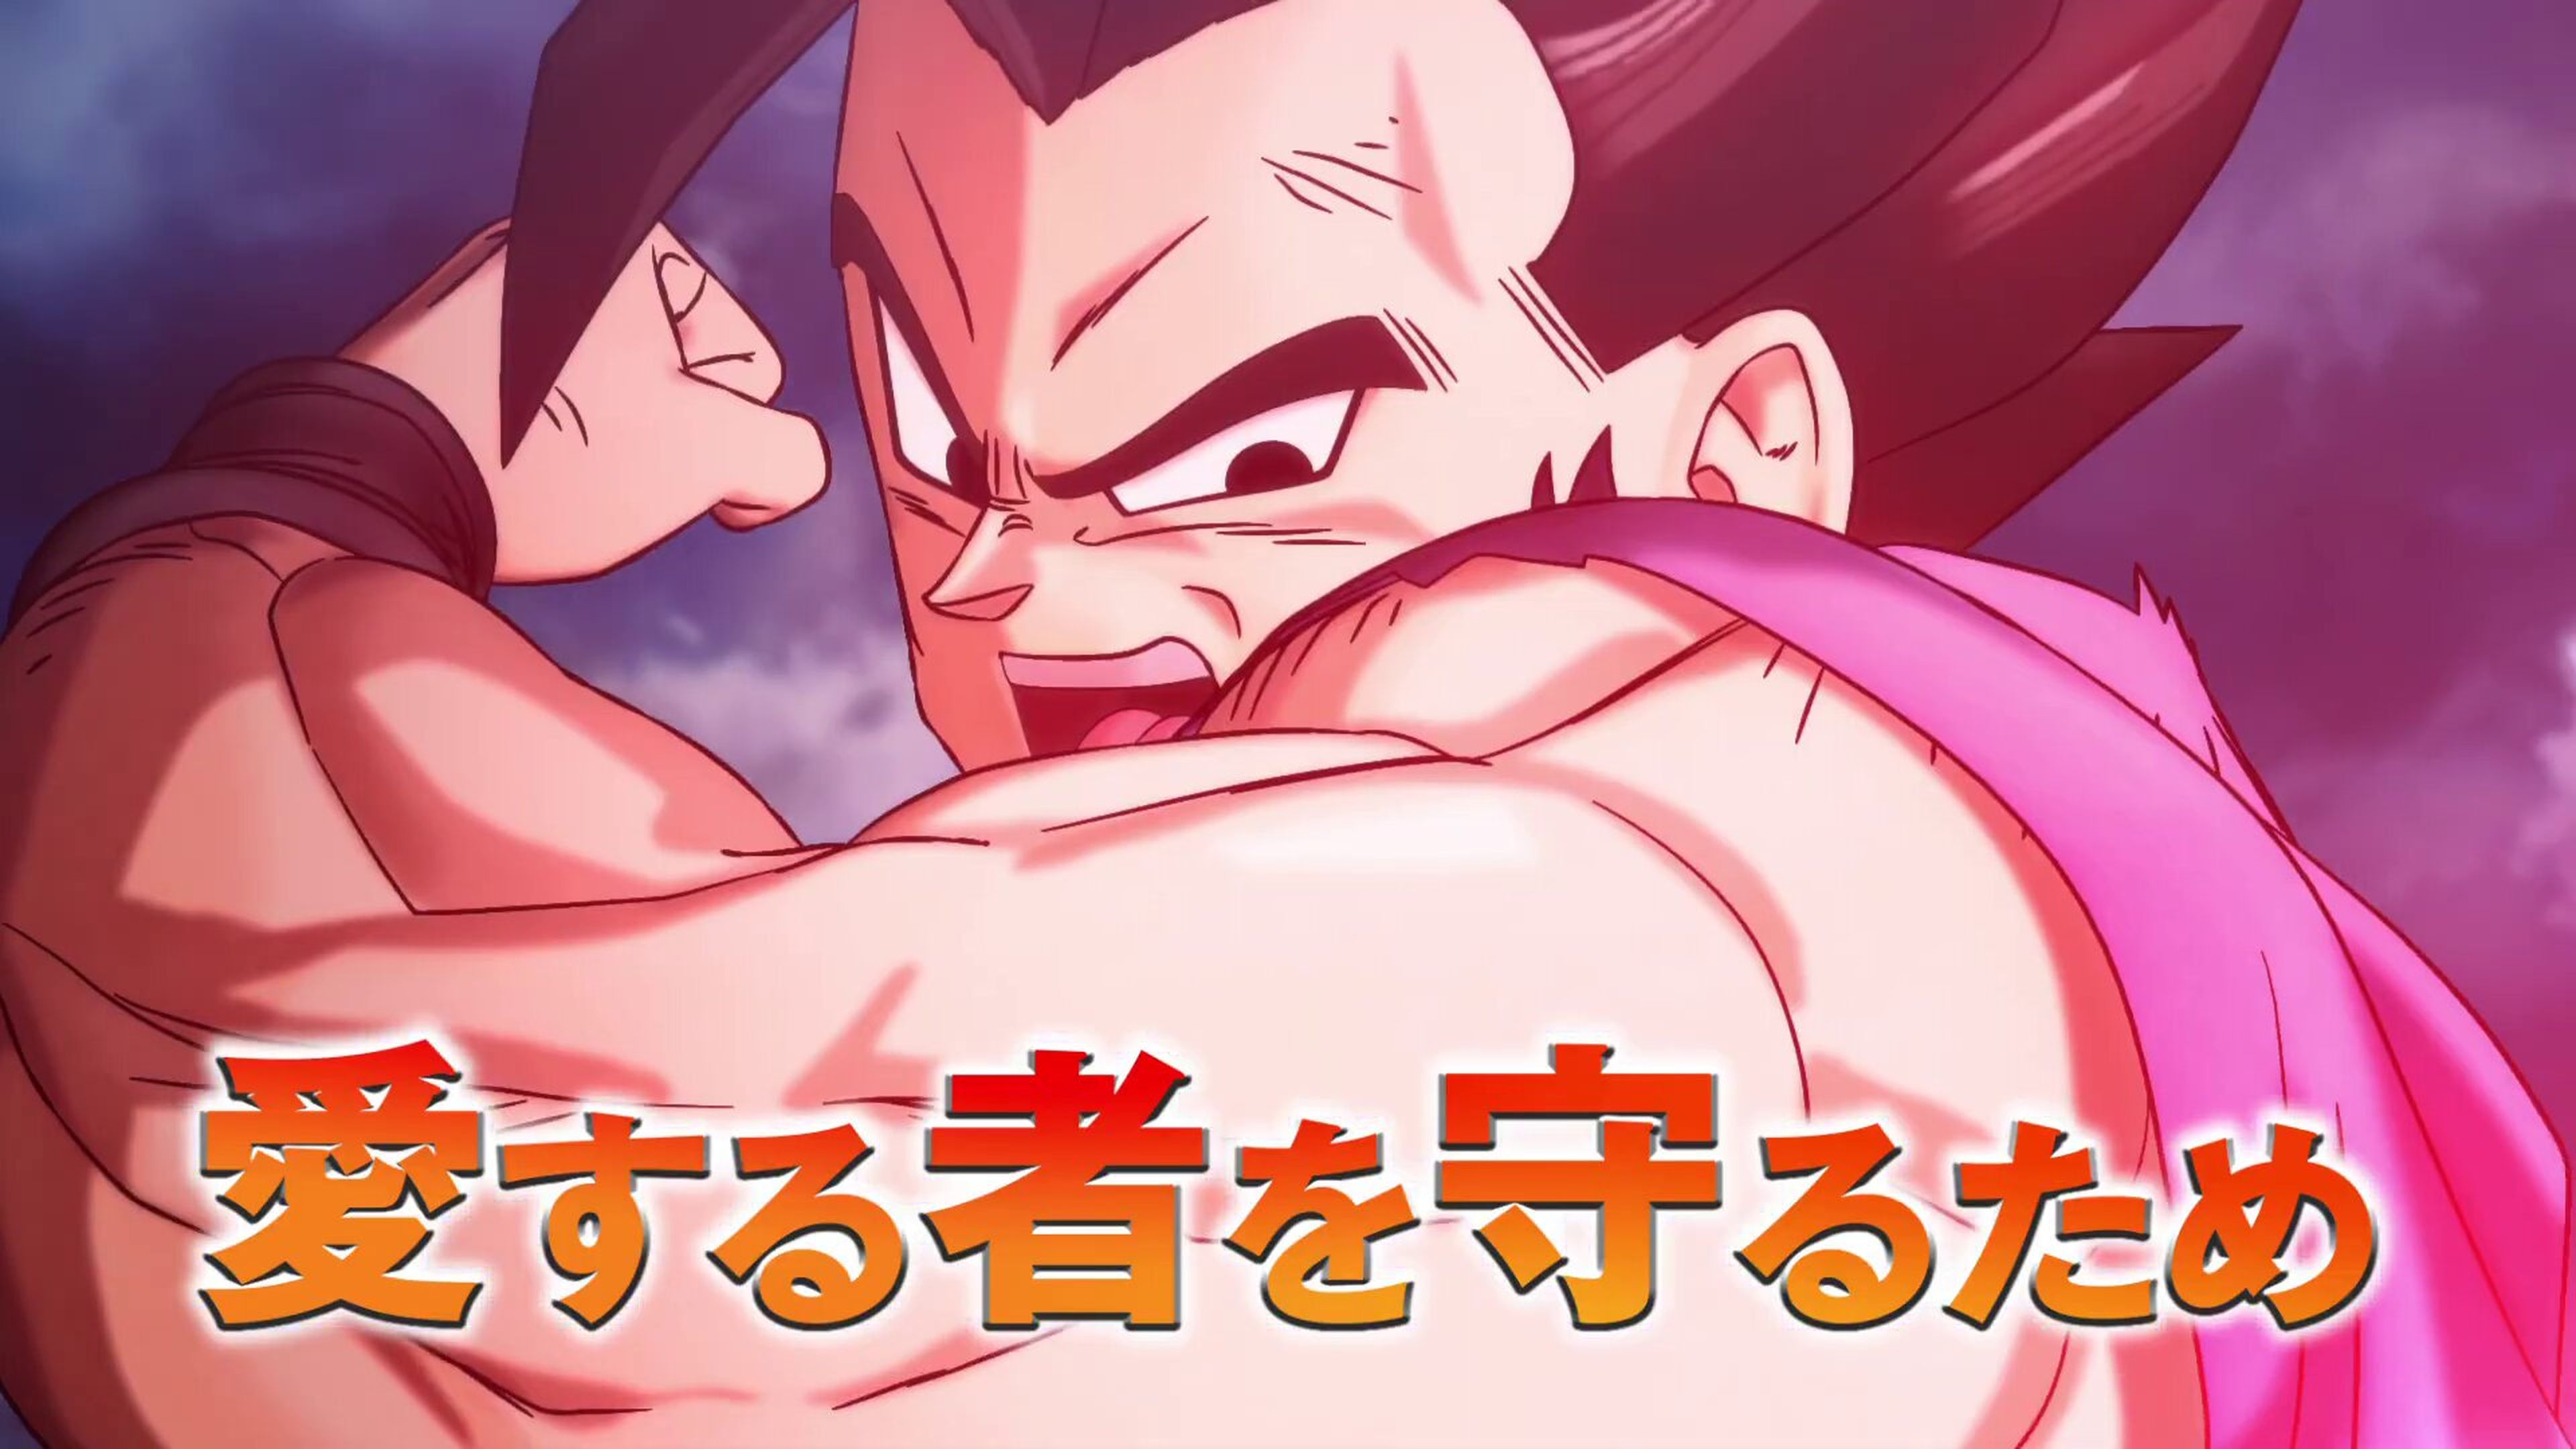 Dragon Ball Super: Super Hero - Nuevo tráiler de la película en el que vemos una escena emotiva entre Gohan y su hija Pan